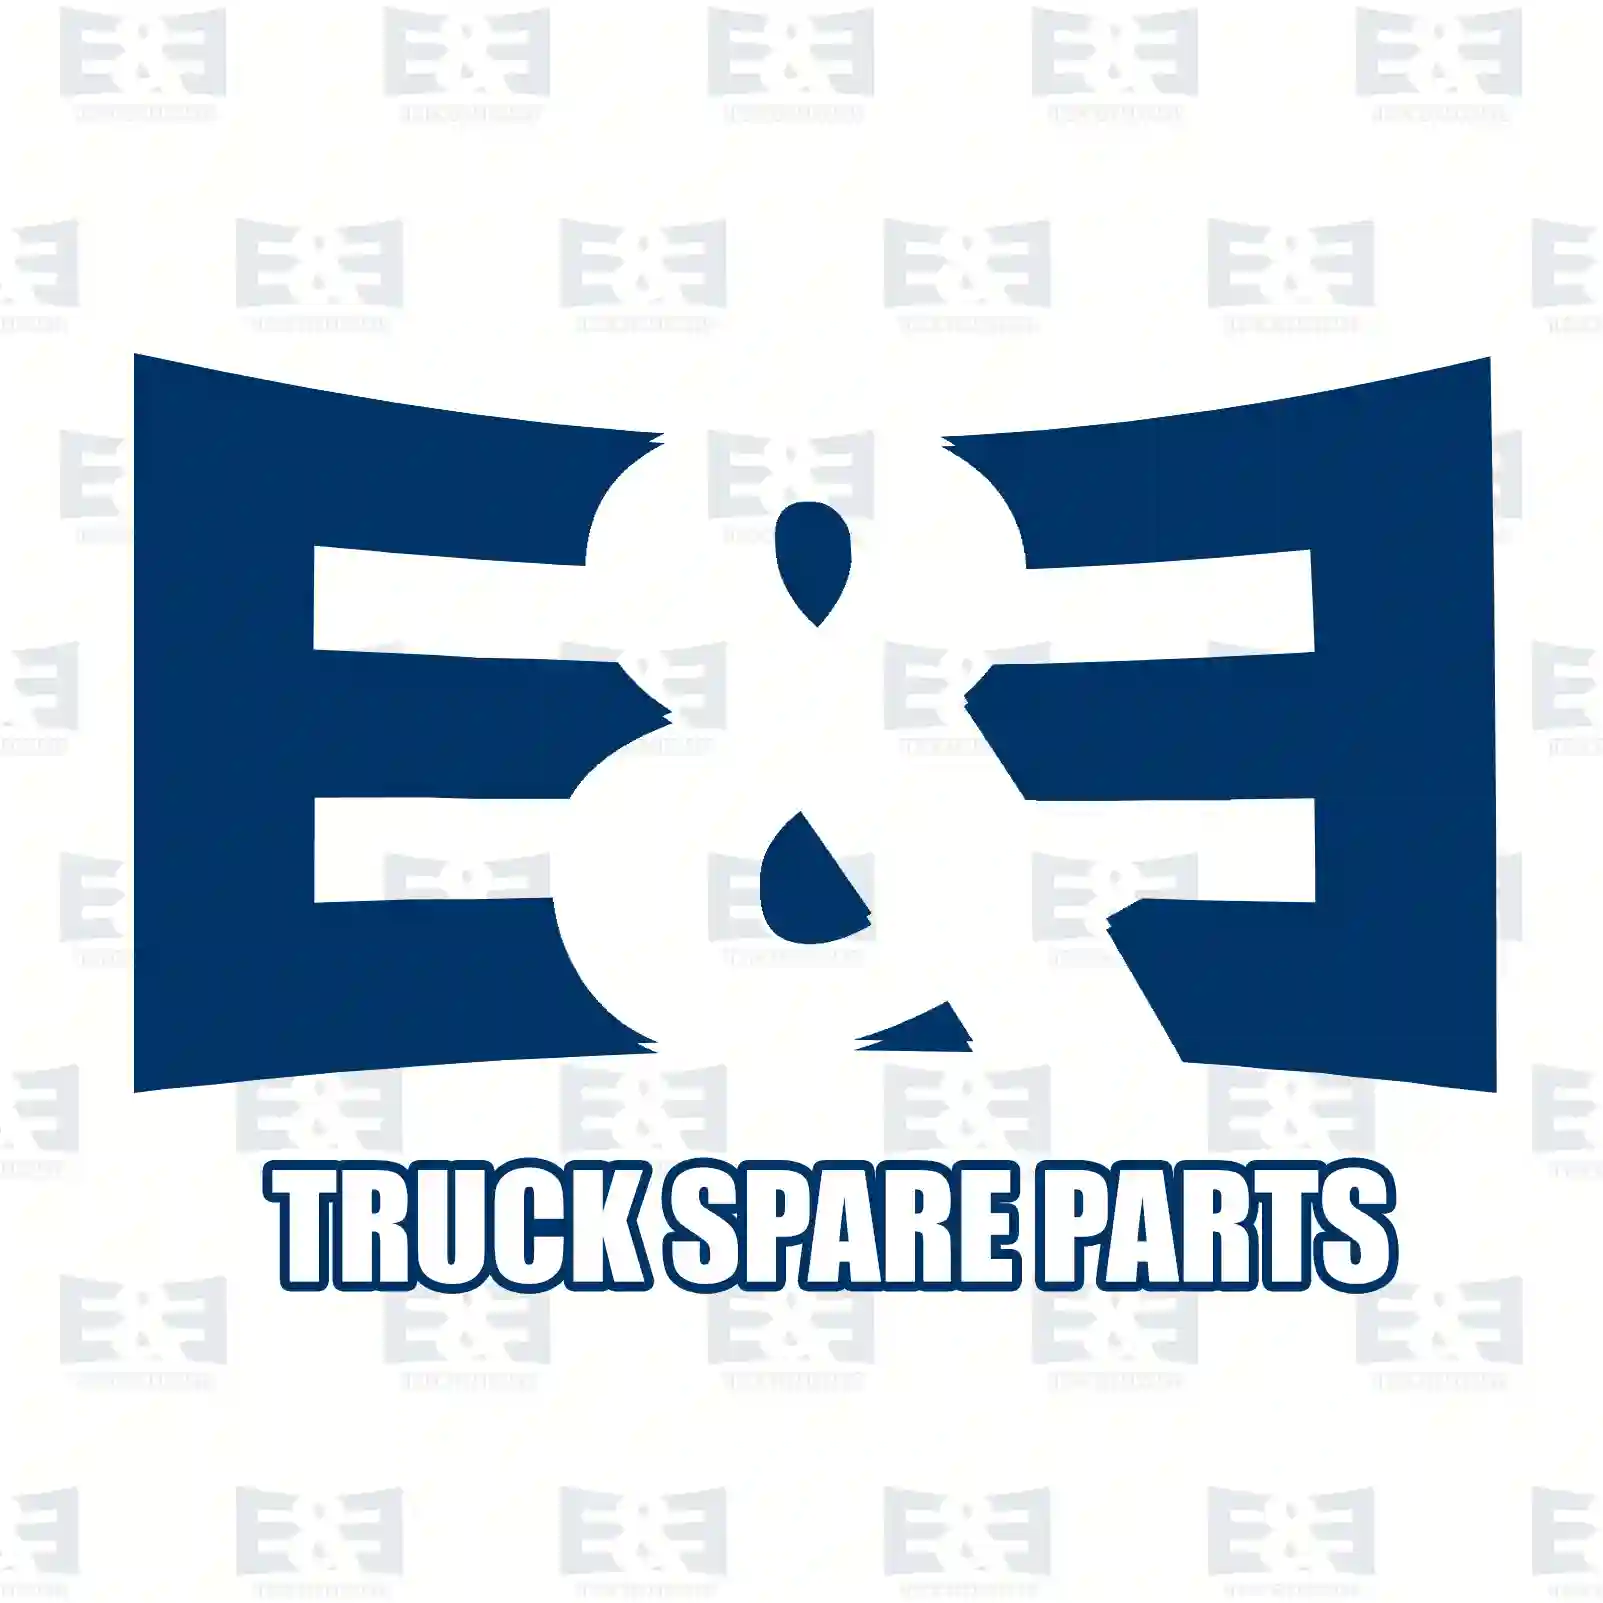 Radiator hose, 2E2203777, 4042233, YC15-8B273-AA ||  2E2203777 E&E Truck Spare Parts | Truck Spare Parts, Auotomotive Spare Parts Radiator hose, 2E2203777, 4042233, YC15-8B273-AA ||  2E2203777 E&E Truck Spare Parts | Truck Spare Parts, Auotomotive Spare Parts